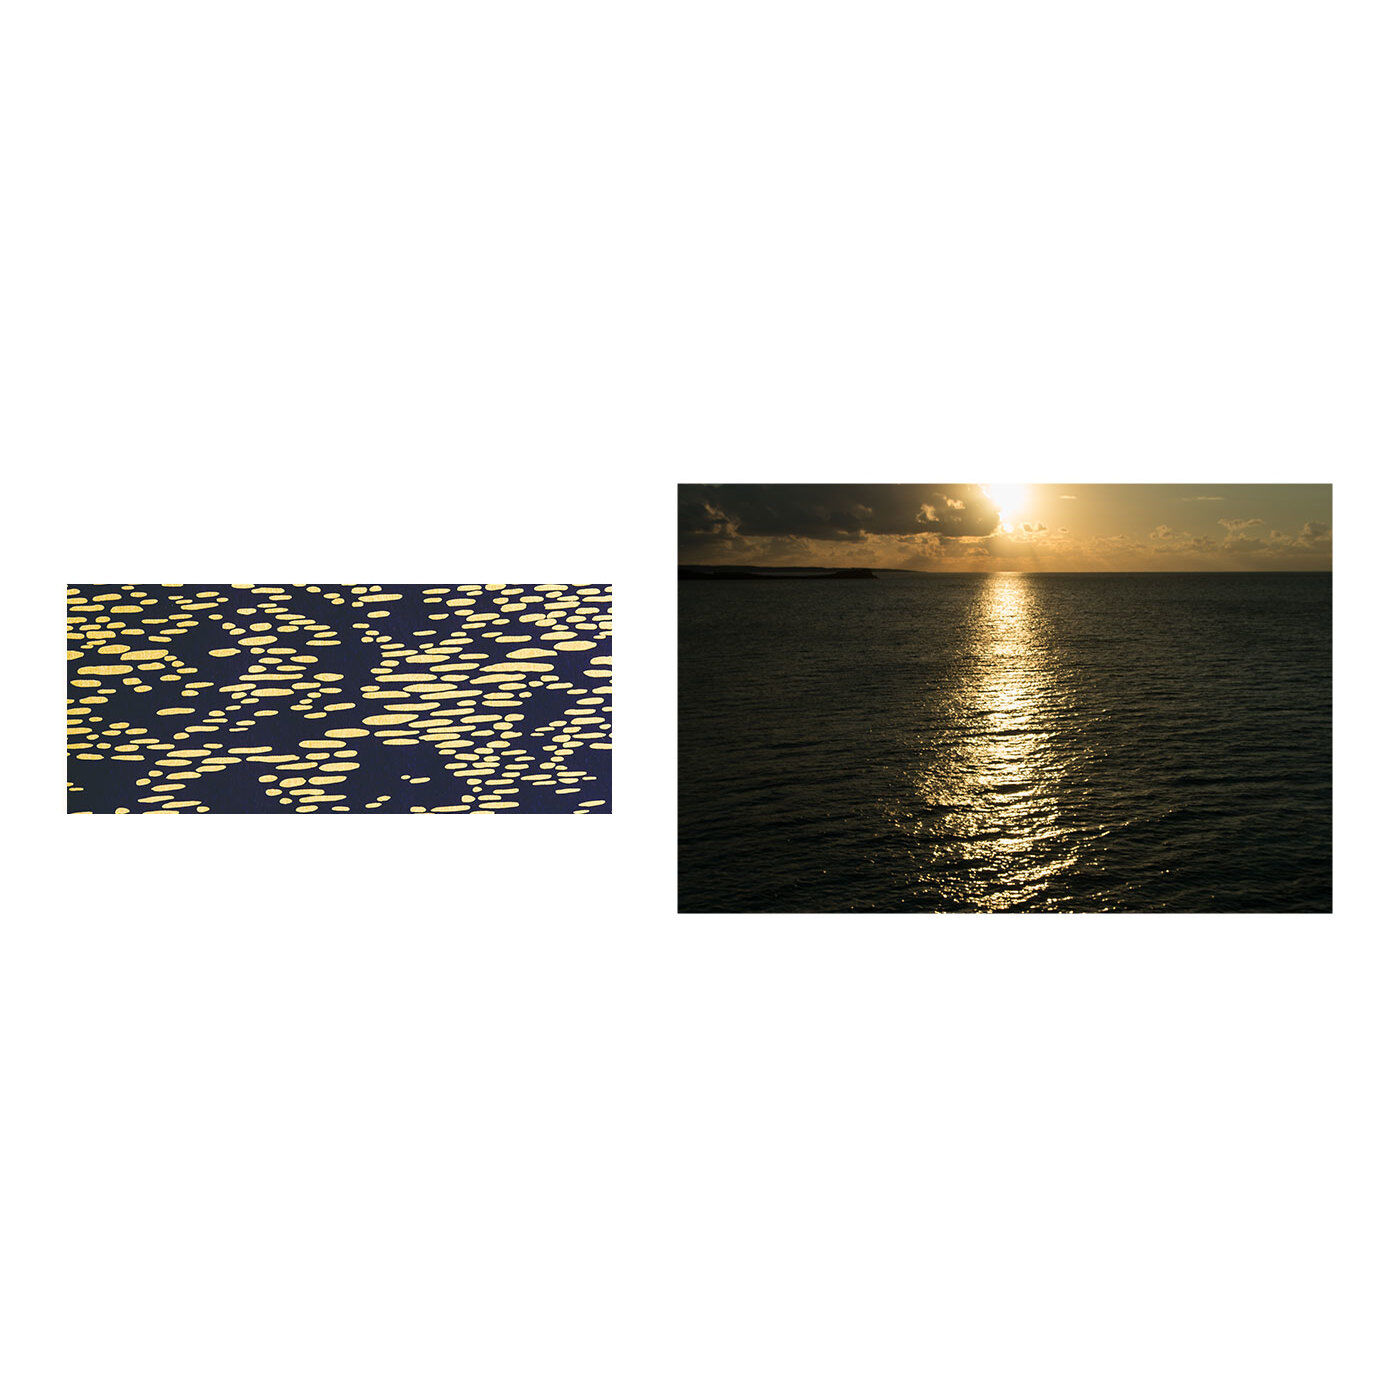 フェリシモの雑貨Kraso|沖縄から愛をこめて。「シマノネ」紙ものセットの会|【島の夕暮れ】朝、昼、晩、さまざまに色や表情を変える海。この柄は夕日にきらめく海の水面をイメージ。自然と寄りそって暮らしてきた島の人々の、穏やかで柔らかな視点を象徴するようなデザインです。自然と人間のやさしい関係が、これからも続いてほしいという願いが込められています。